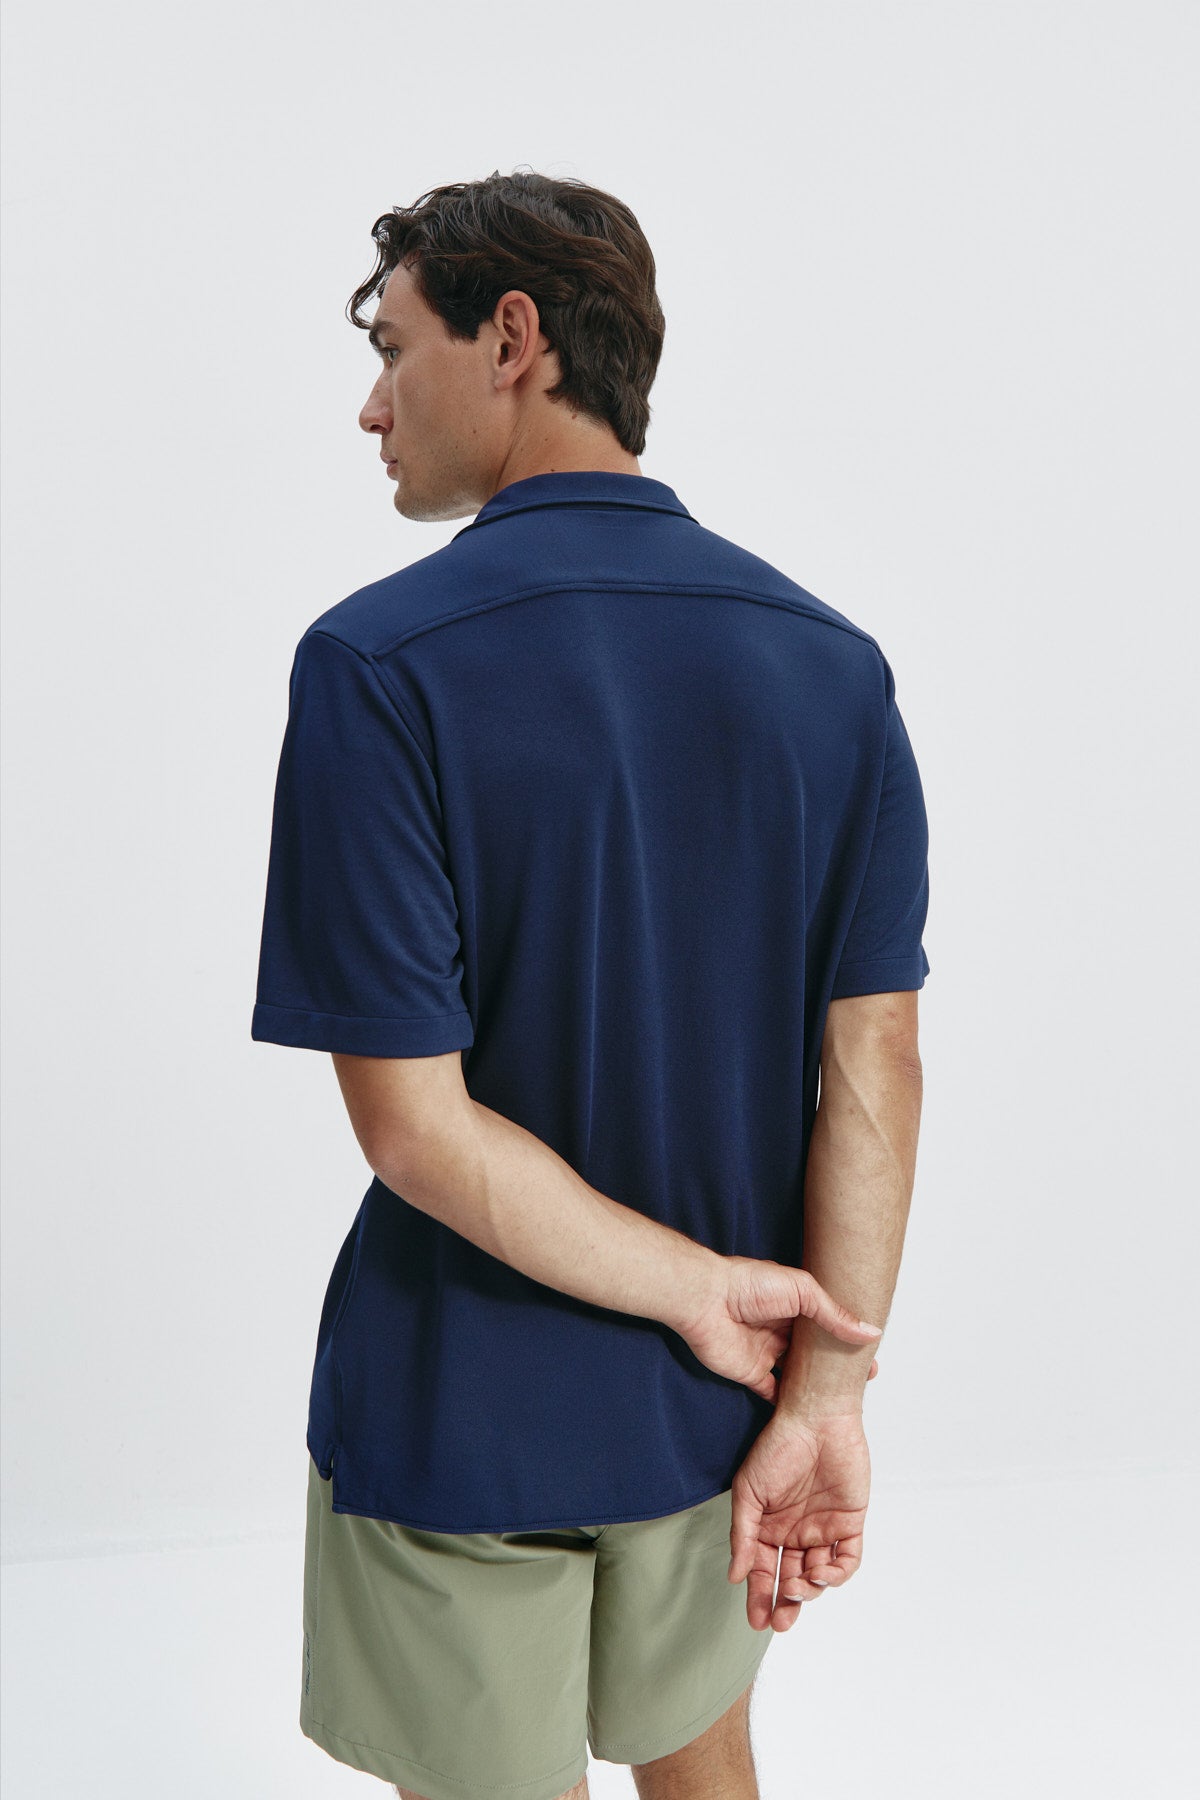 Camisa manga corta azul zafiro de Sepiia, fresca y elegante, perfecta para el verano. Foto espalda